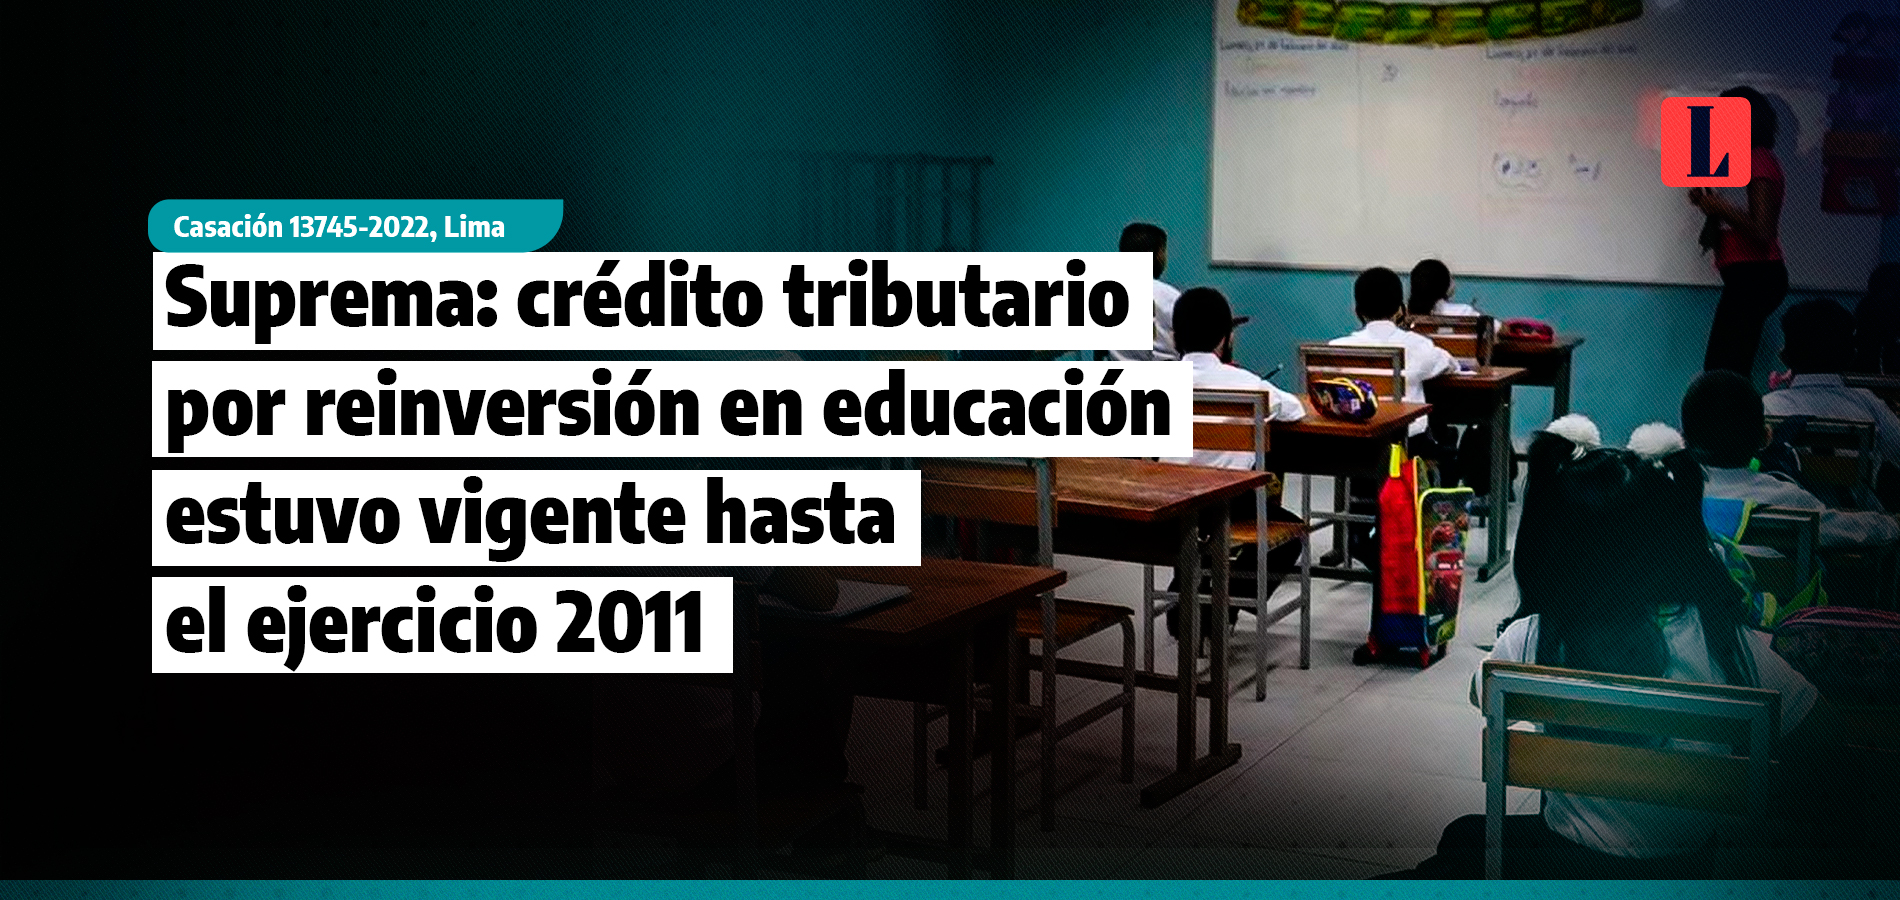 Suprema: crédito tributario por reinversión en educación estuvo vigente hasta el ejercicio 2011